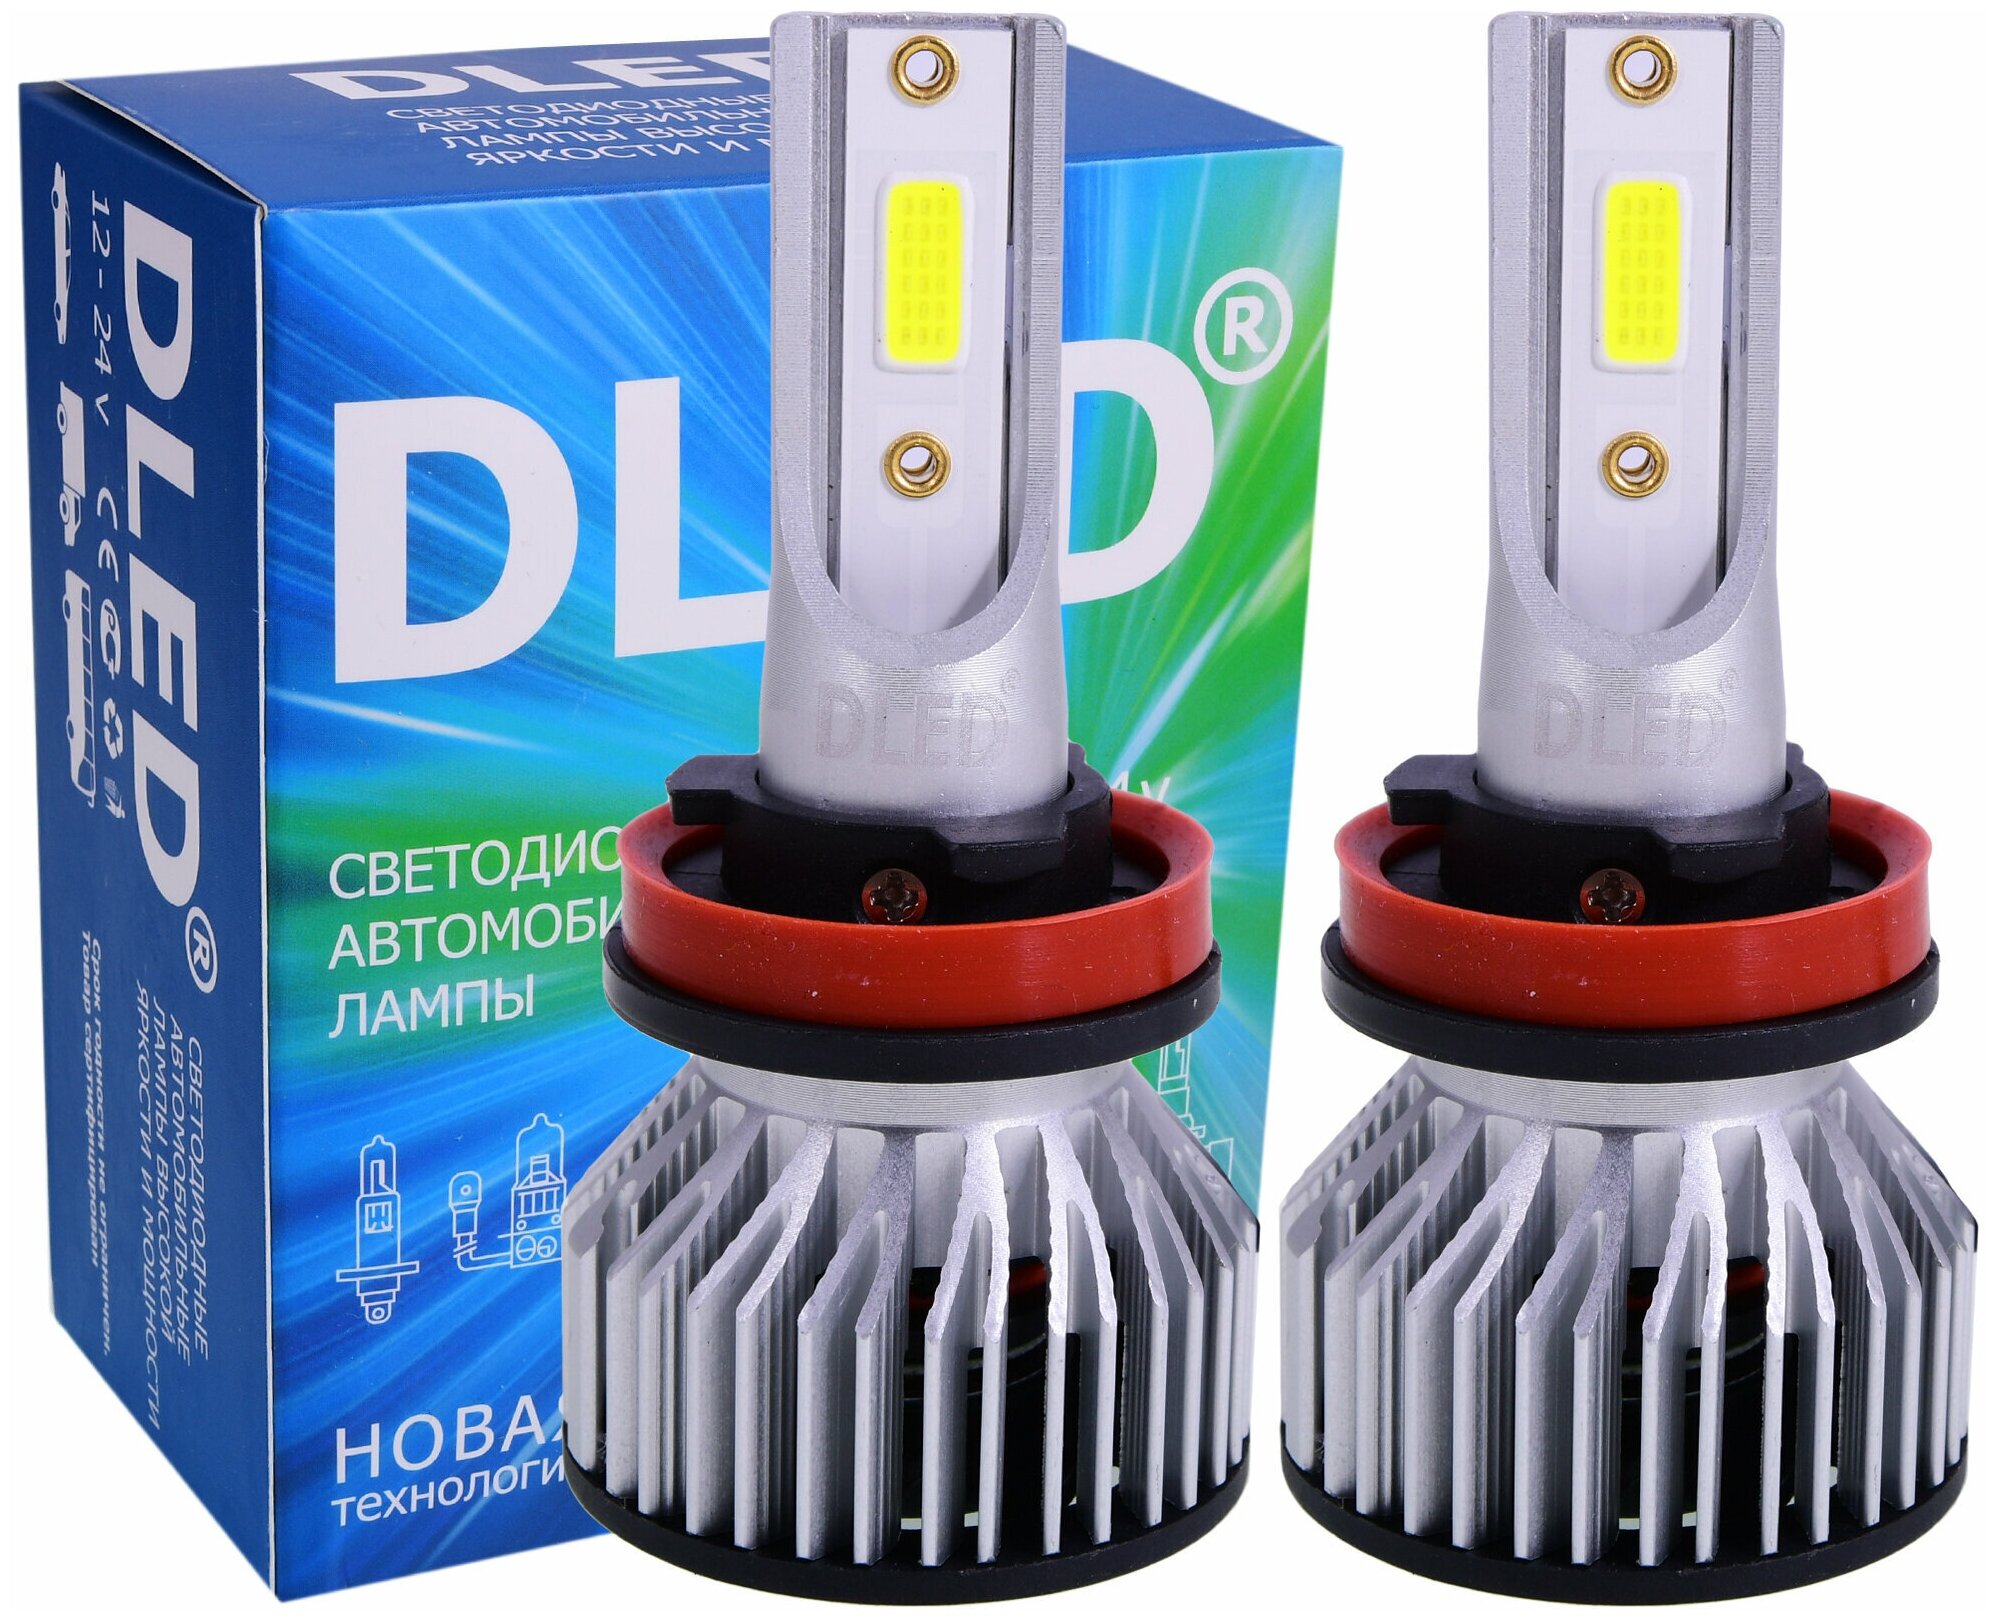 Автомобильные светодиодные лампы H11 Для ближнего / дальнего света и противотуманных фар Серия BEAM Бренд DLED (2 лампы)